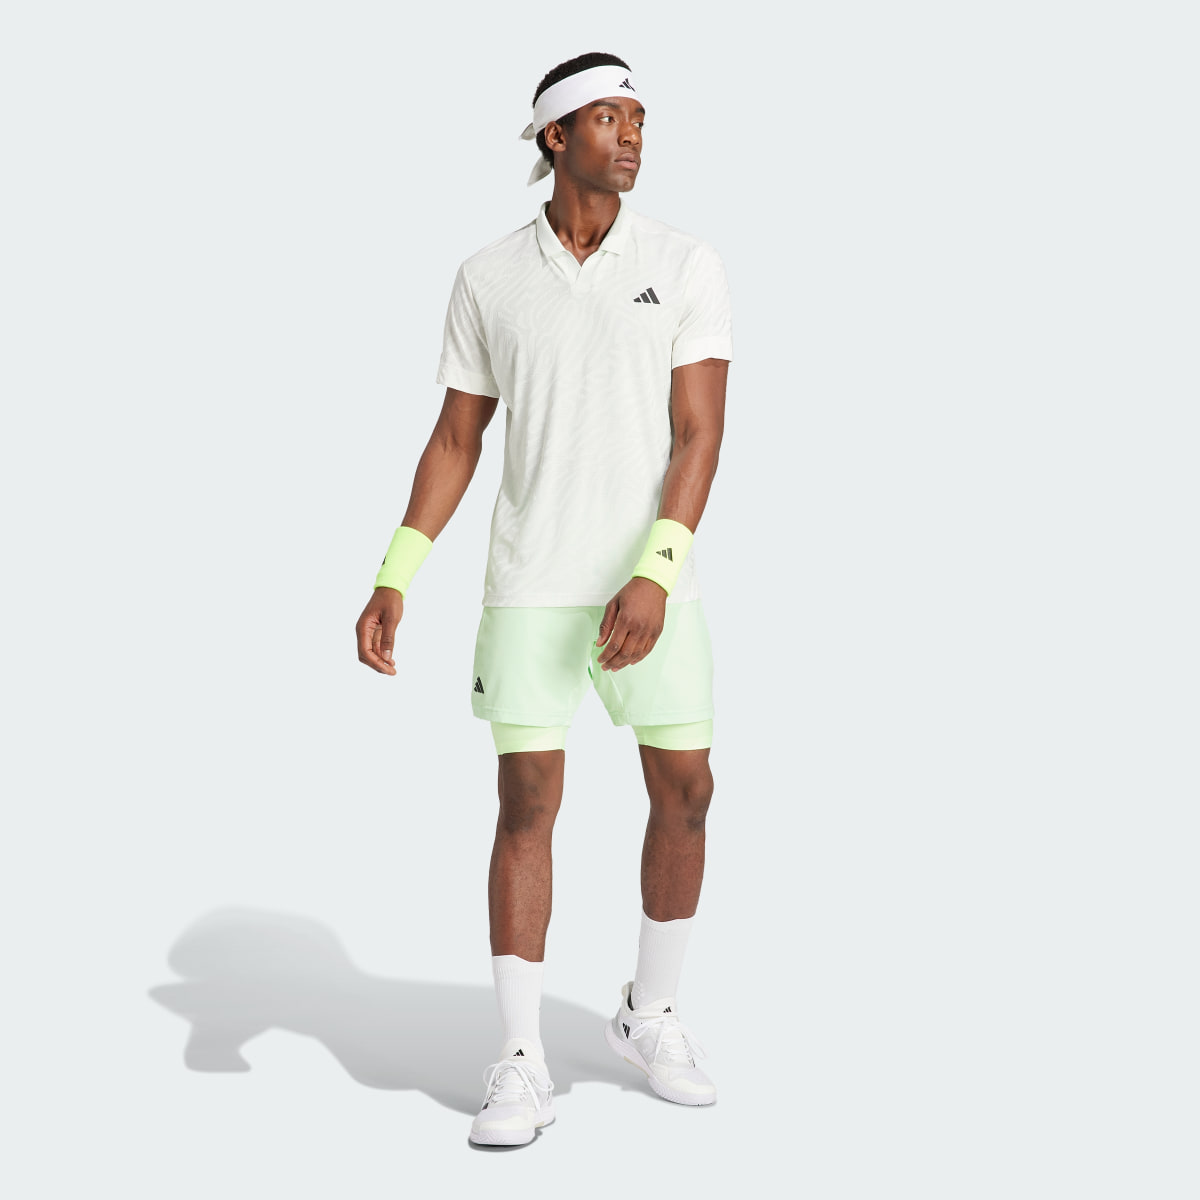 Adidas Tennis HEAT.RDY Şort ve İç Tayt Takımı. 6